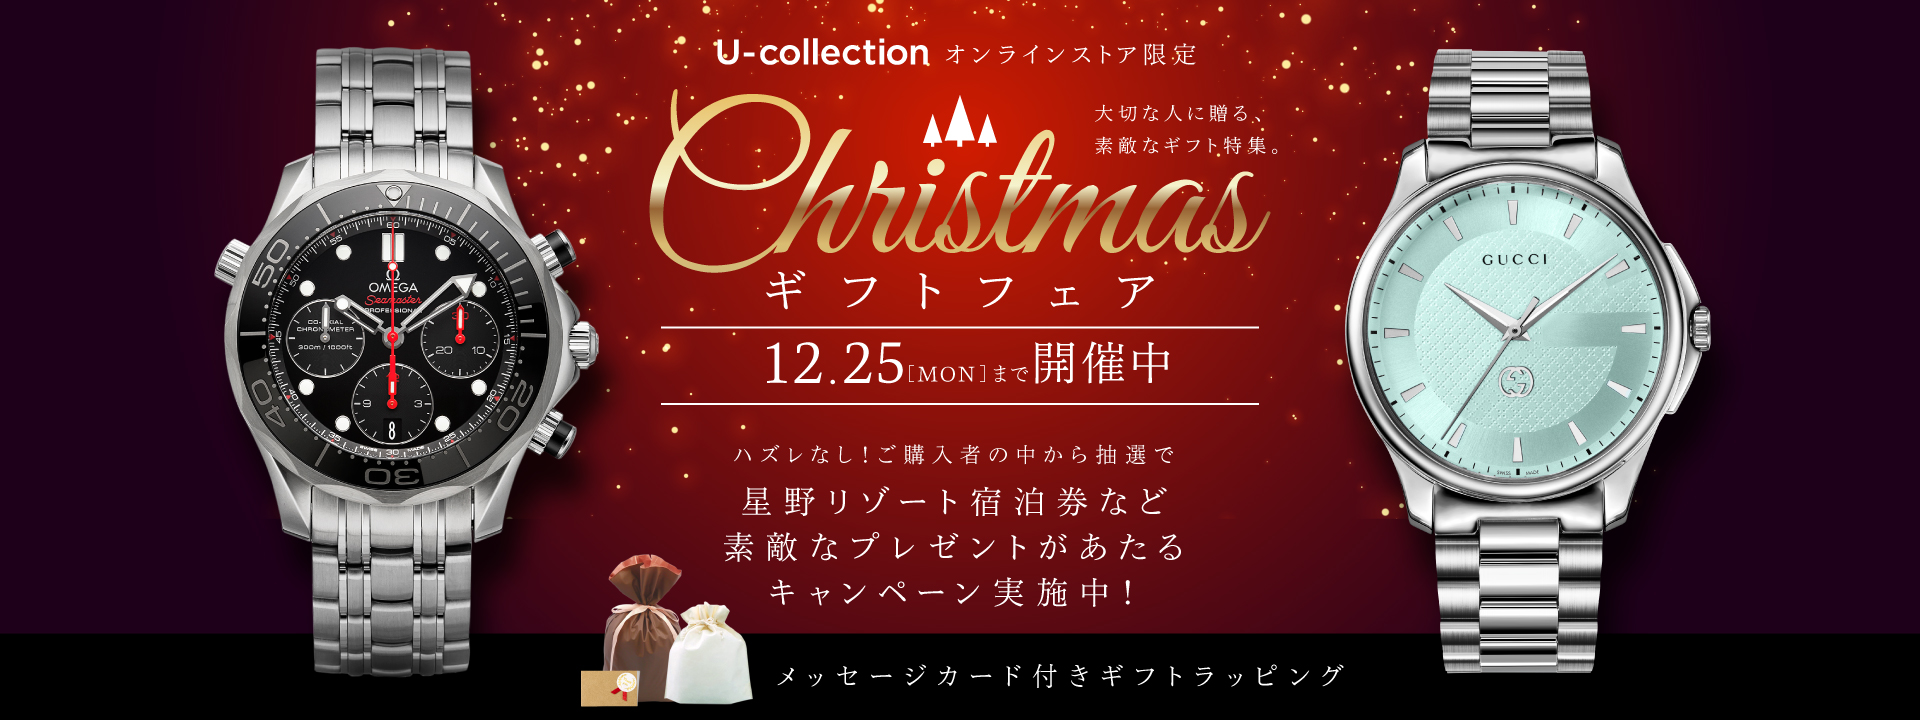 クリスマスギフトフェア | 海外ブランド腕時計通販 U-collection